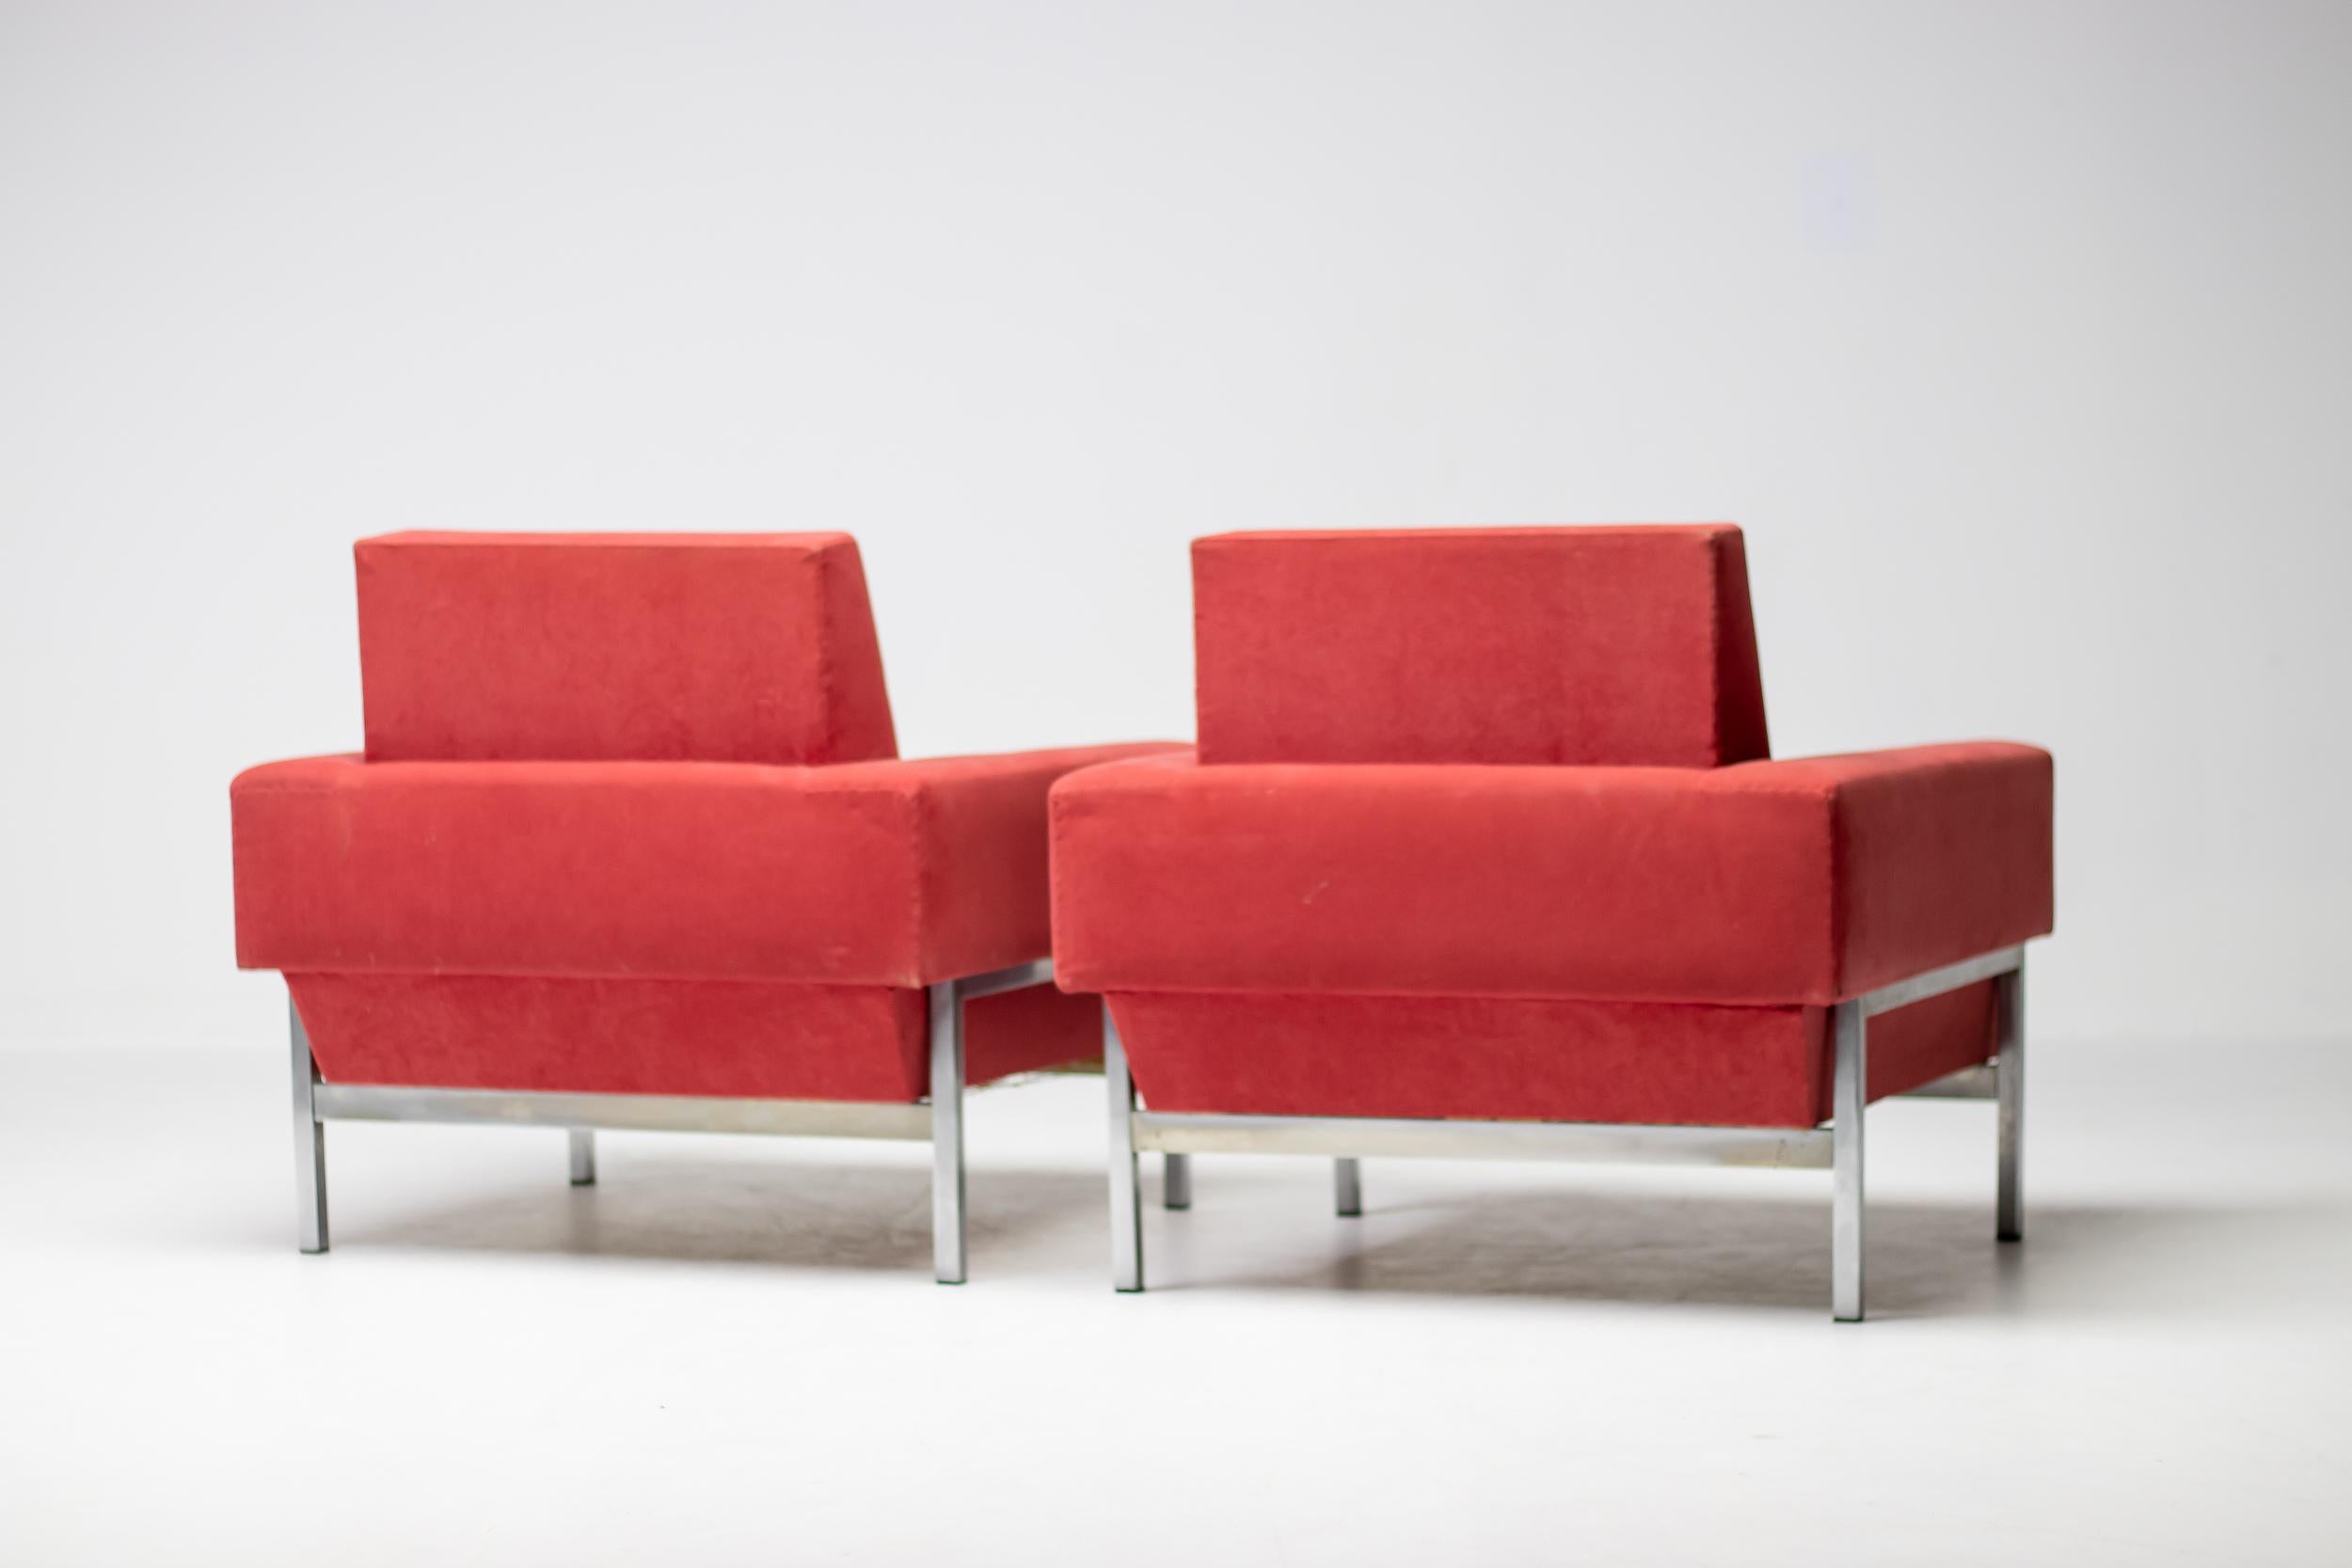 Kiushu Clubsessel in rotem Alcantara-Stoff, hergestellt in Italien um 1960 von Saporiti. 
Diese Stühle mit verchromtem Stahlgestell zeichnen sich durch eine schräge Rückenlehne im unteren Bereich aus. 
Das verchromte Gestell bildet einen schönen